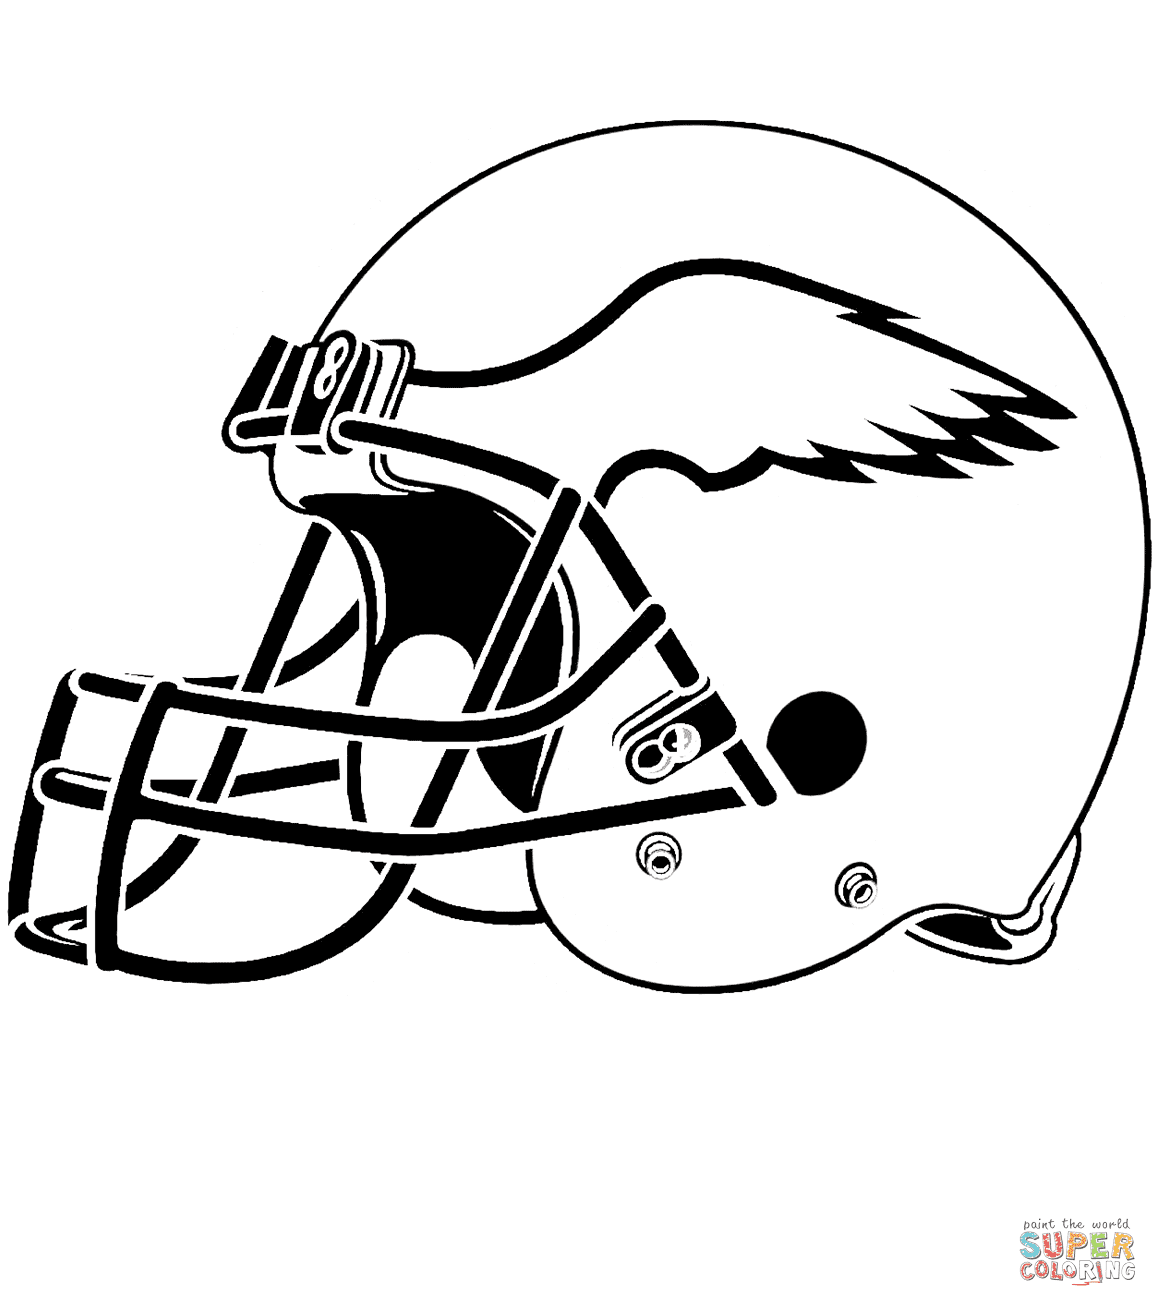 Dibujo de Casco de los Eagles de Filadelfia para colorear